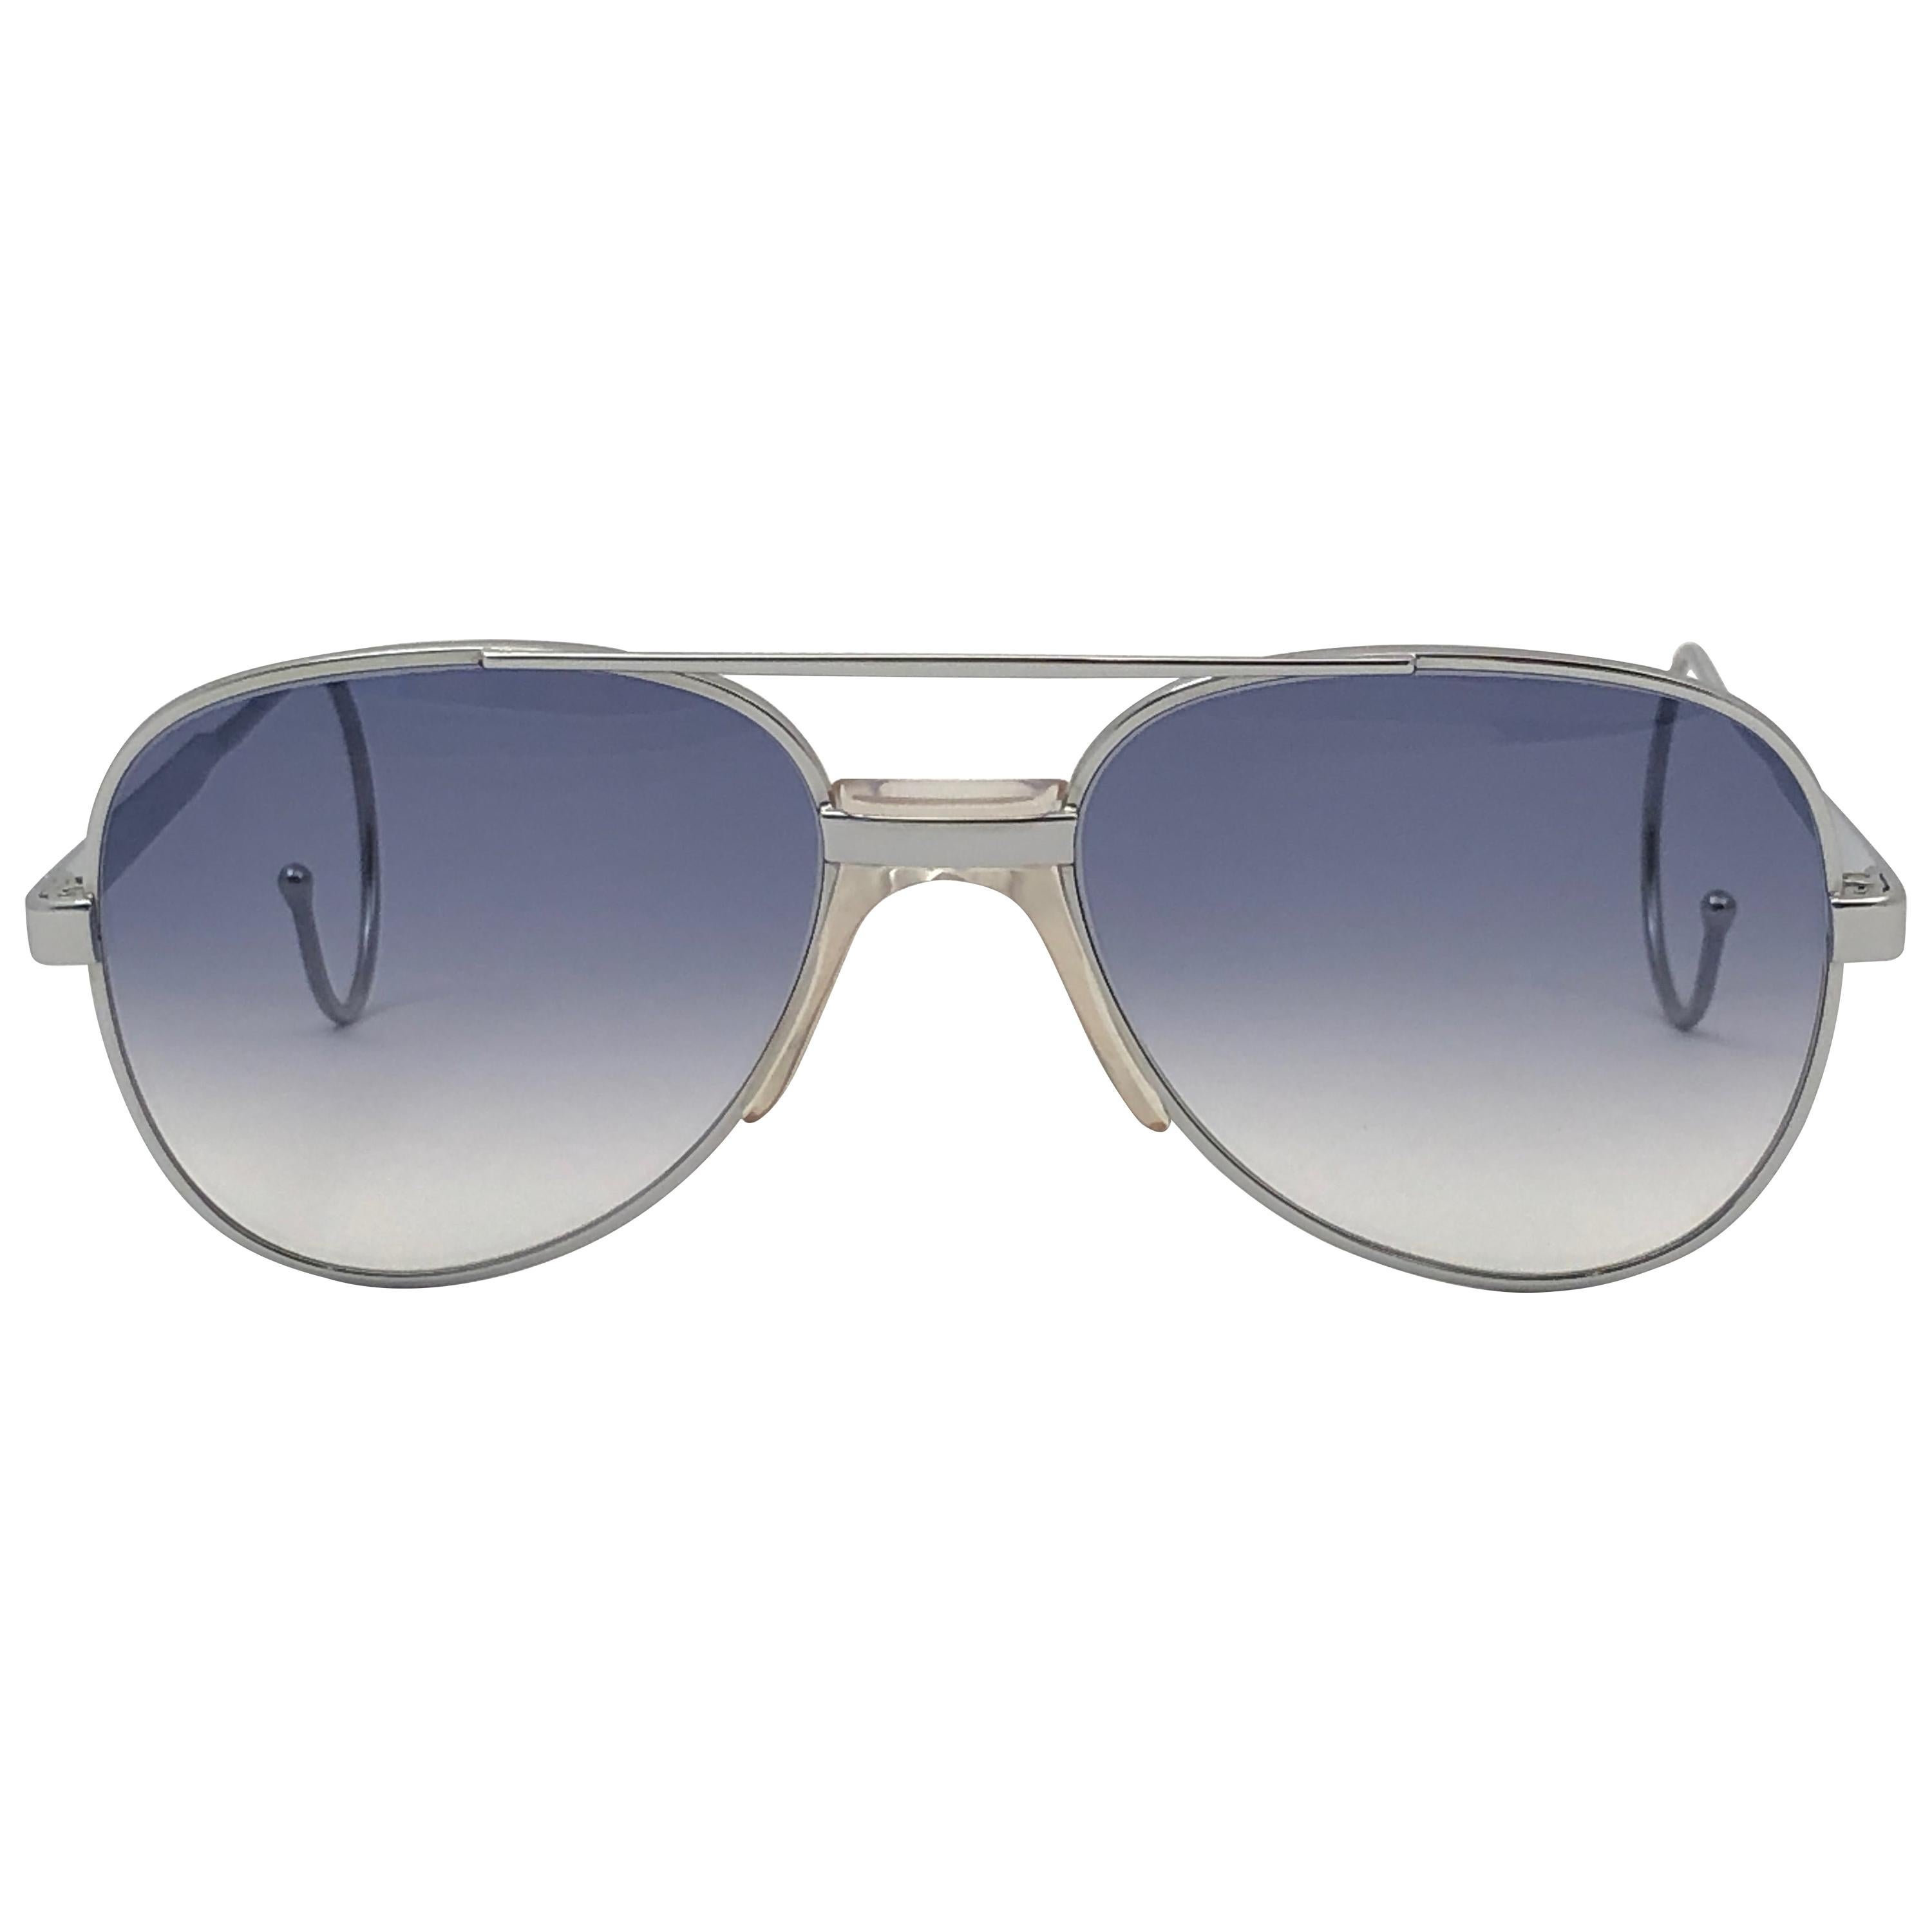 Serge Kirchhofer lunettes de soleil vintage neuves à monture argentée bleu argentée, Autriche 624